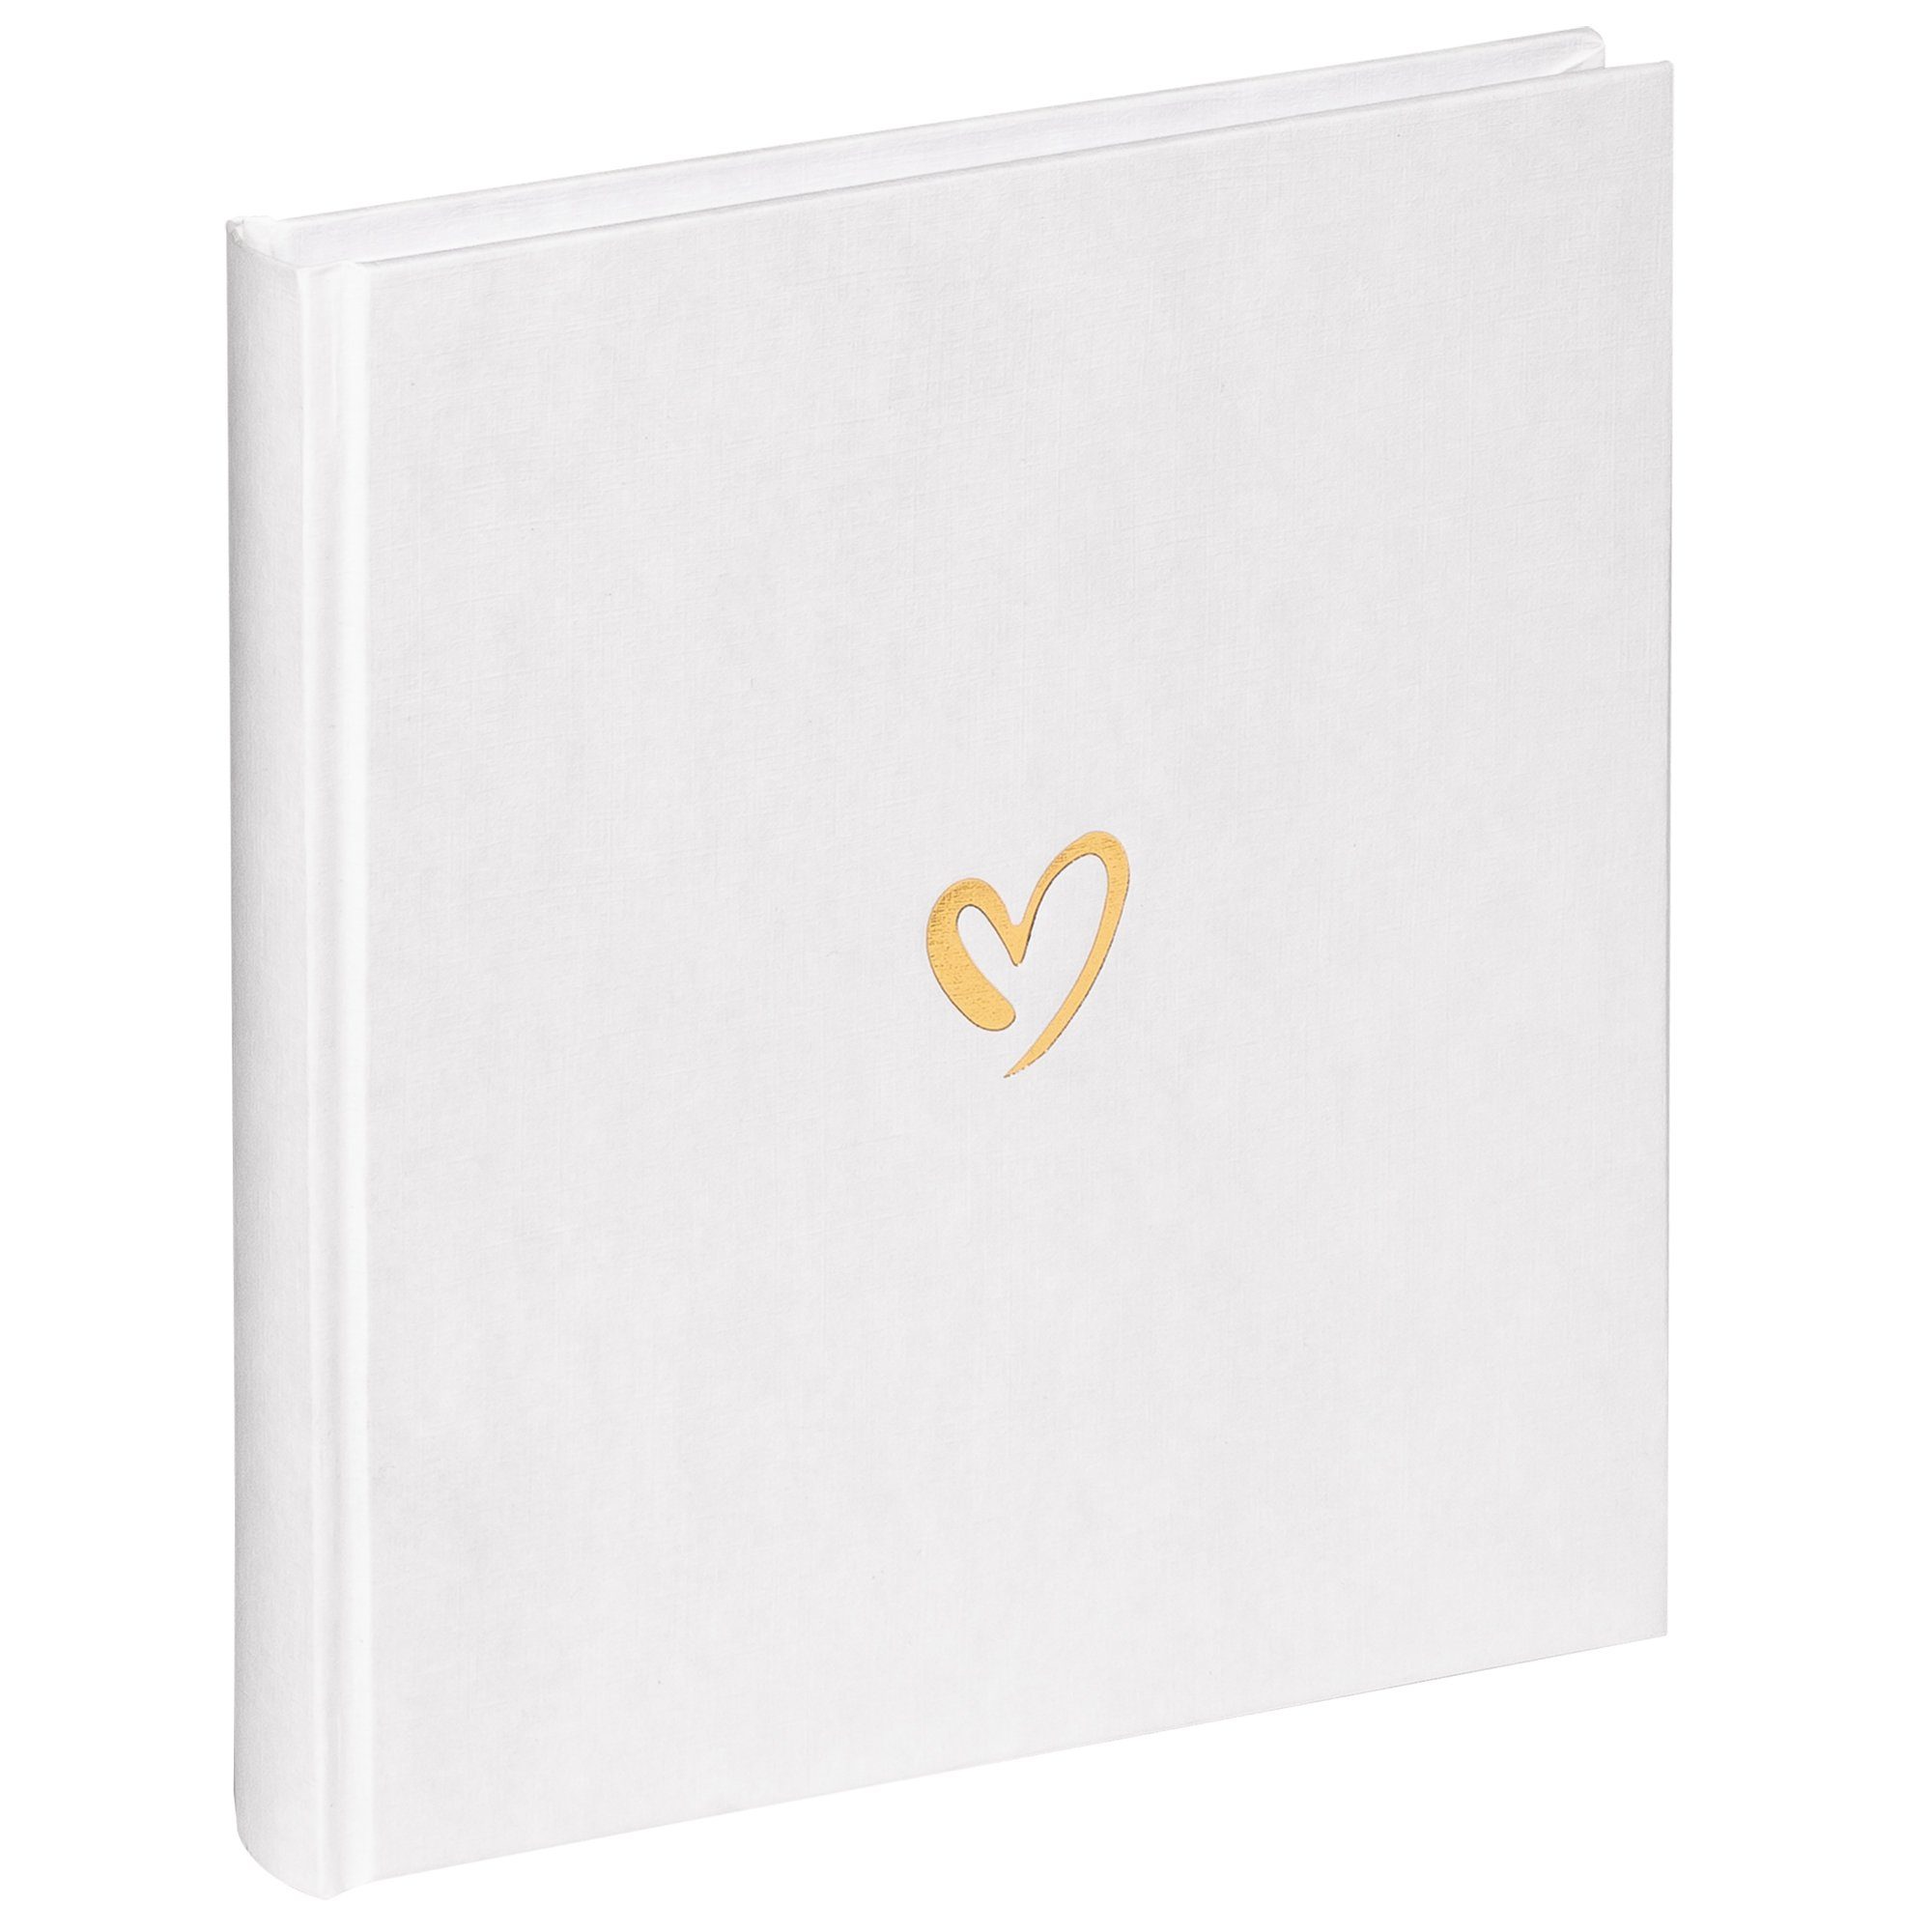 Walther Design Fotoalbum Emotion Classicalbum, buchgebundenes Album, Leineneinband mit einer goldenen Herzprägung